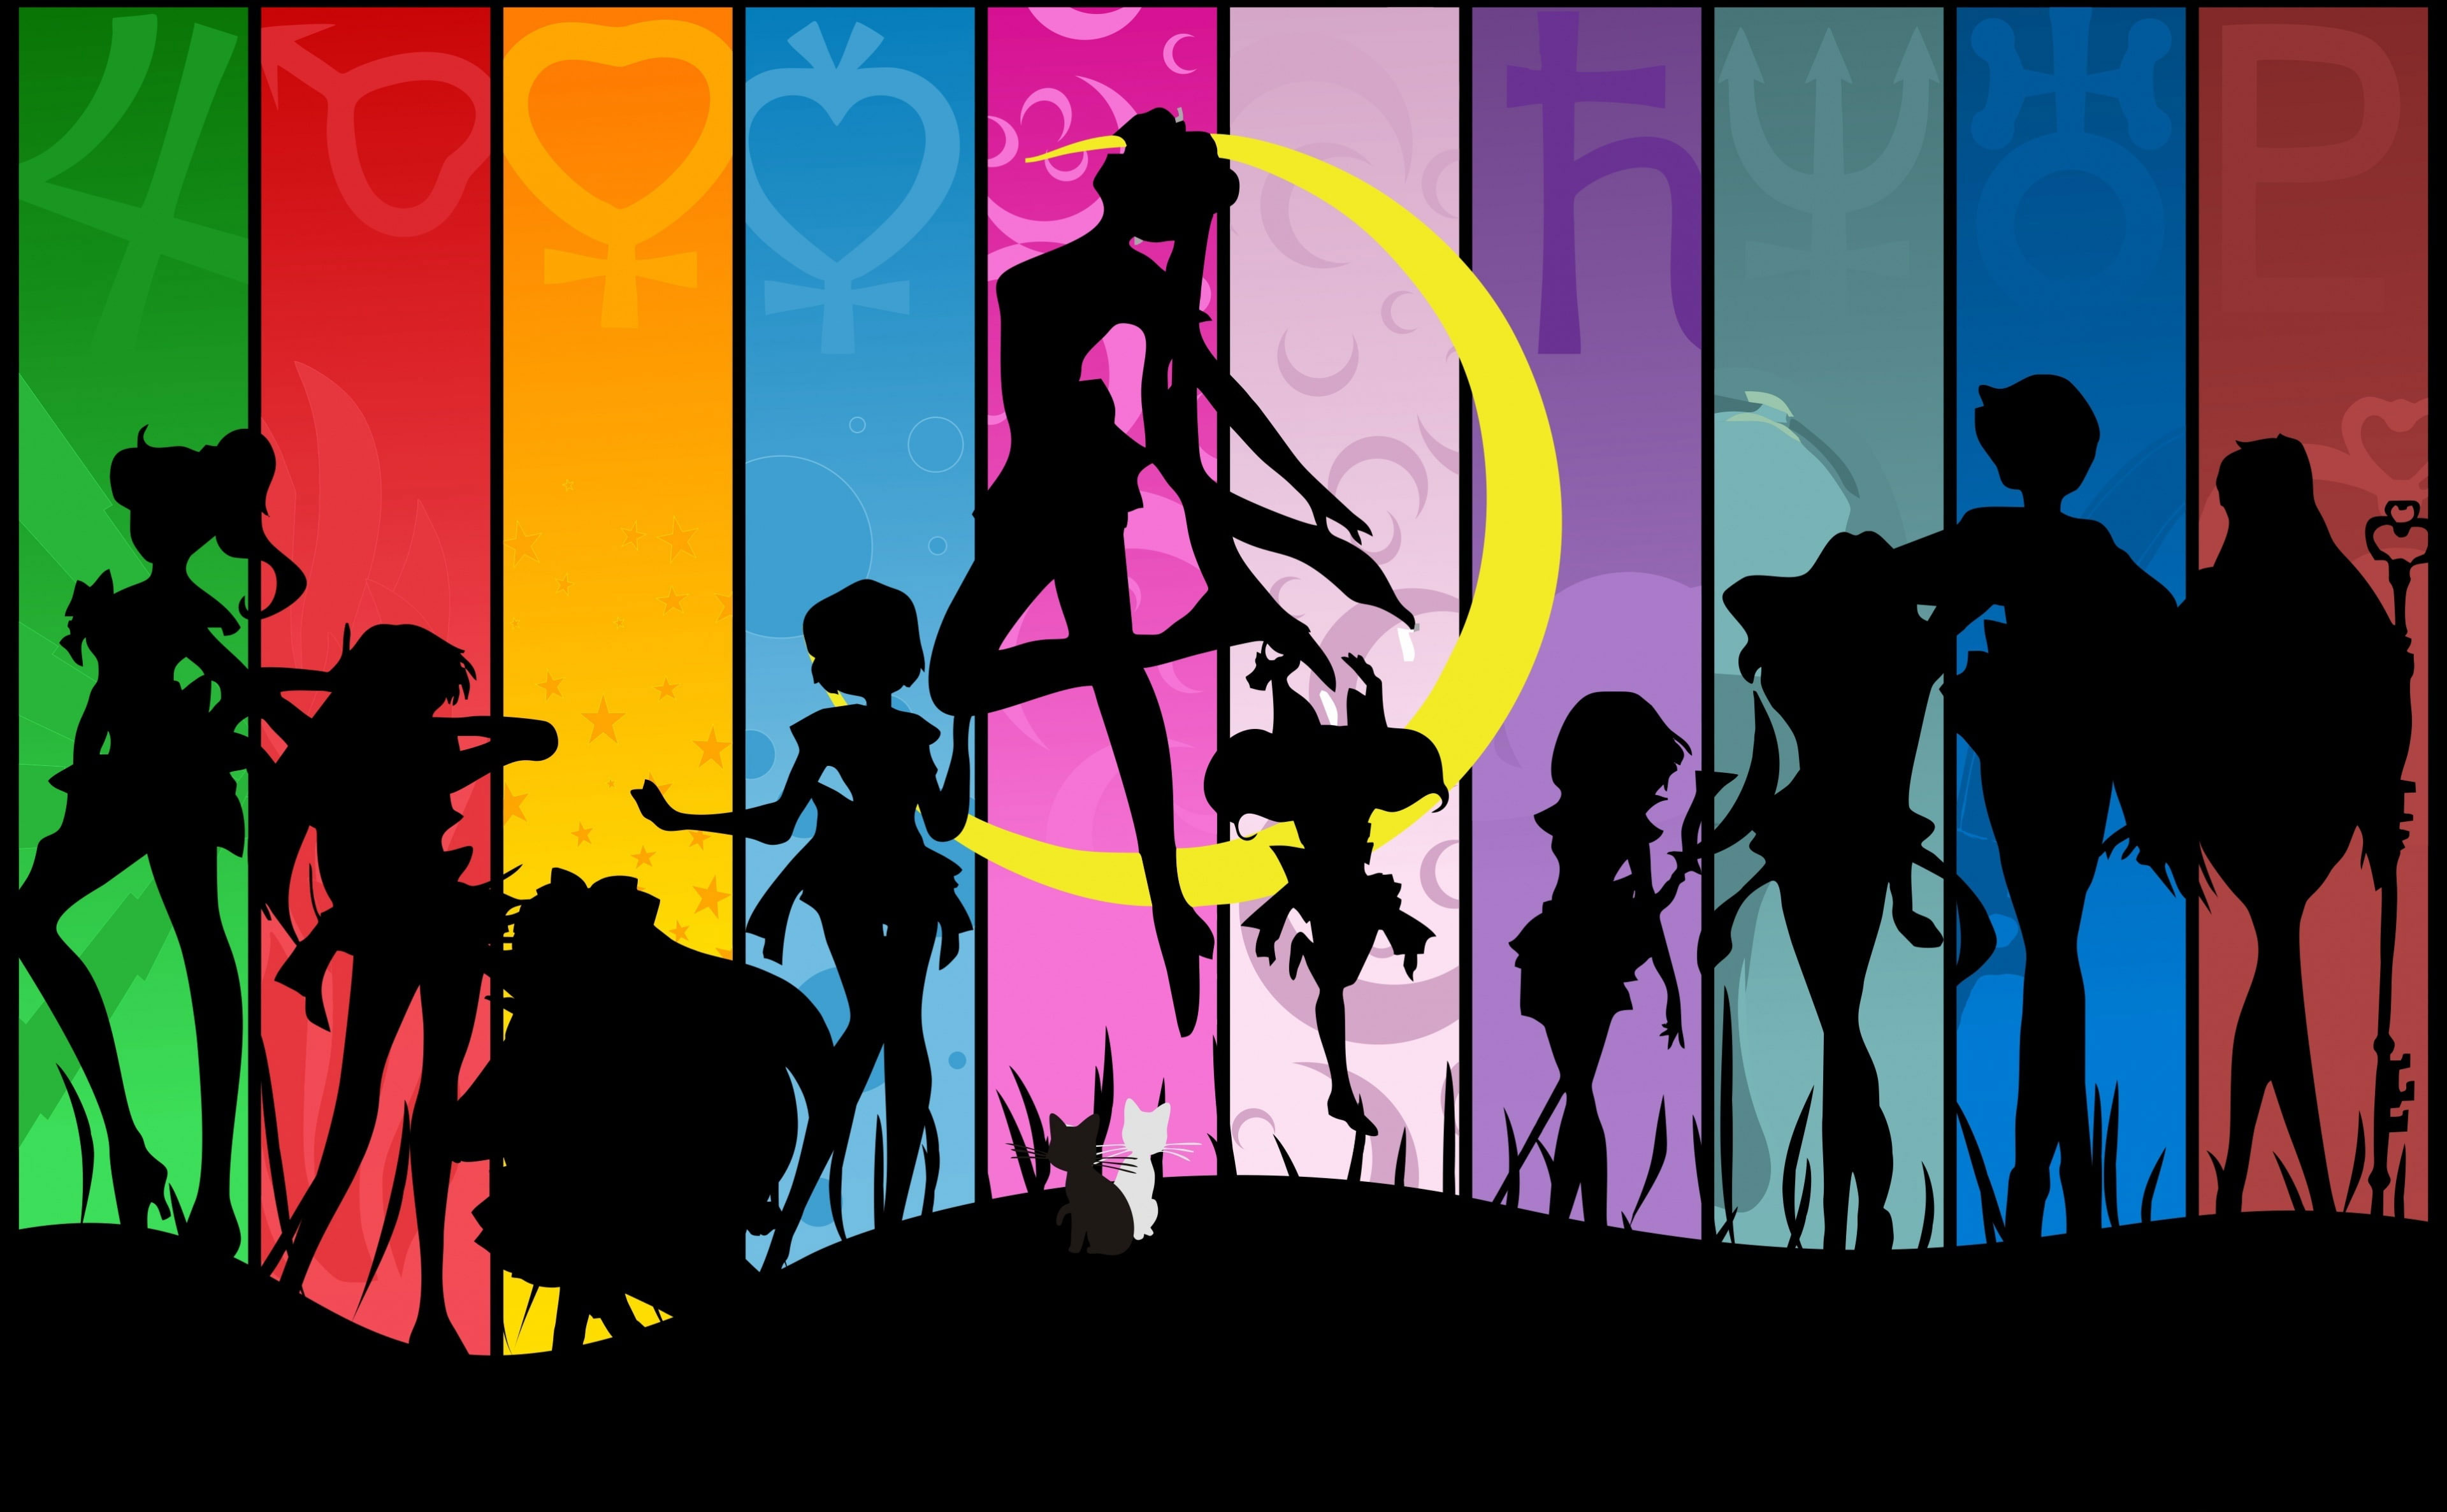 Wallpaper Sailormoon, Sailor Moon Wallpaper, Artistic, Anime, Sailor Moon, Anime